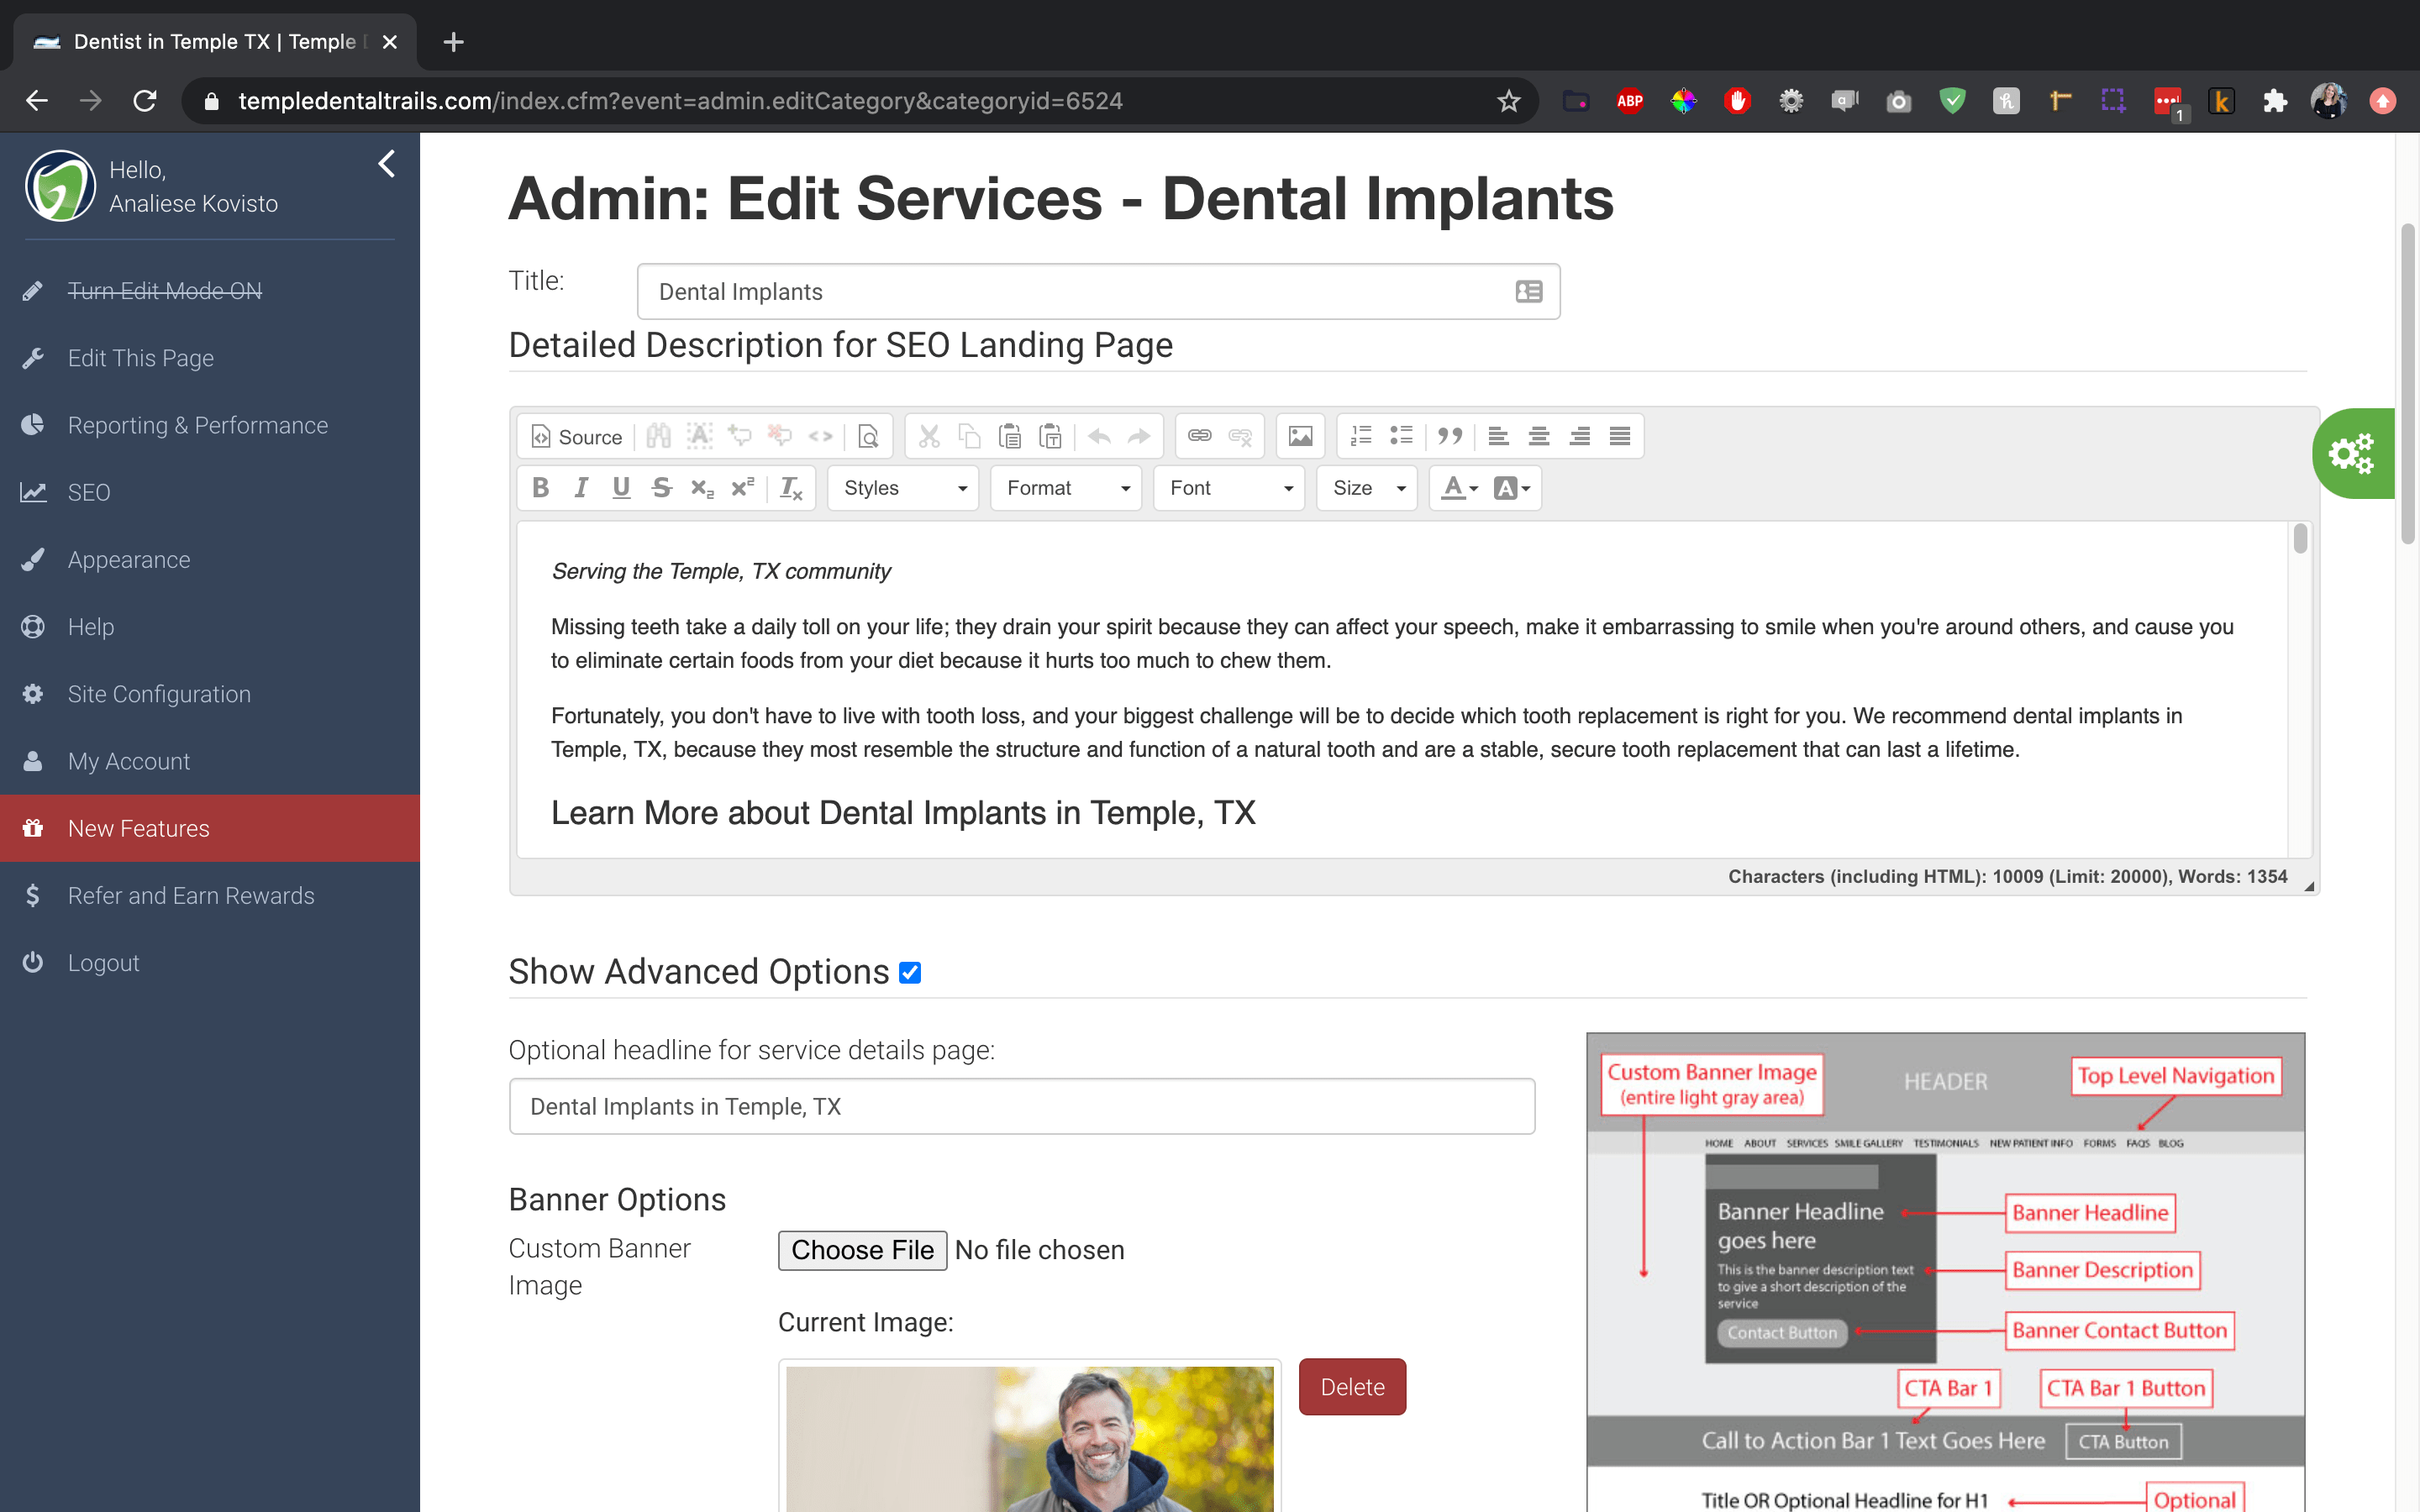 Built for Dental Practices